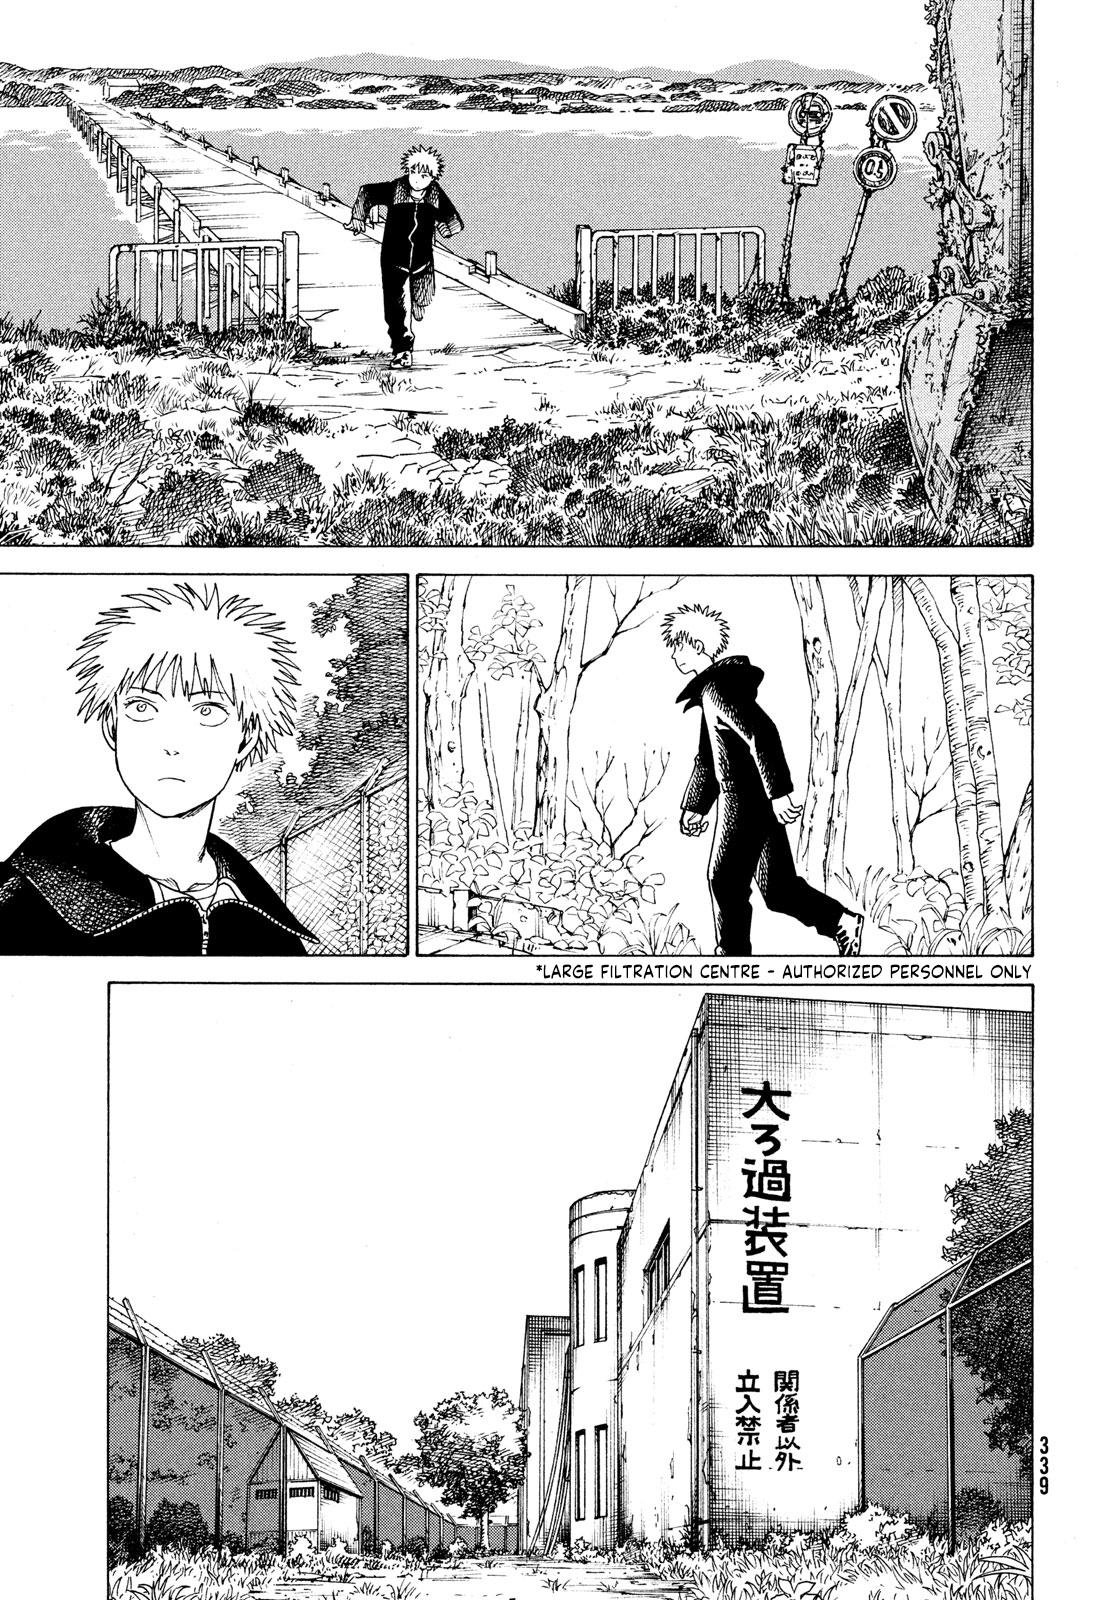 Tengoku Daimakyou Chapter 33: Inazaki Robin ➁ page 9 - Mangakakalot